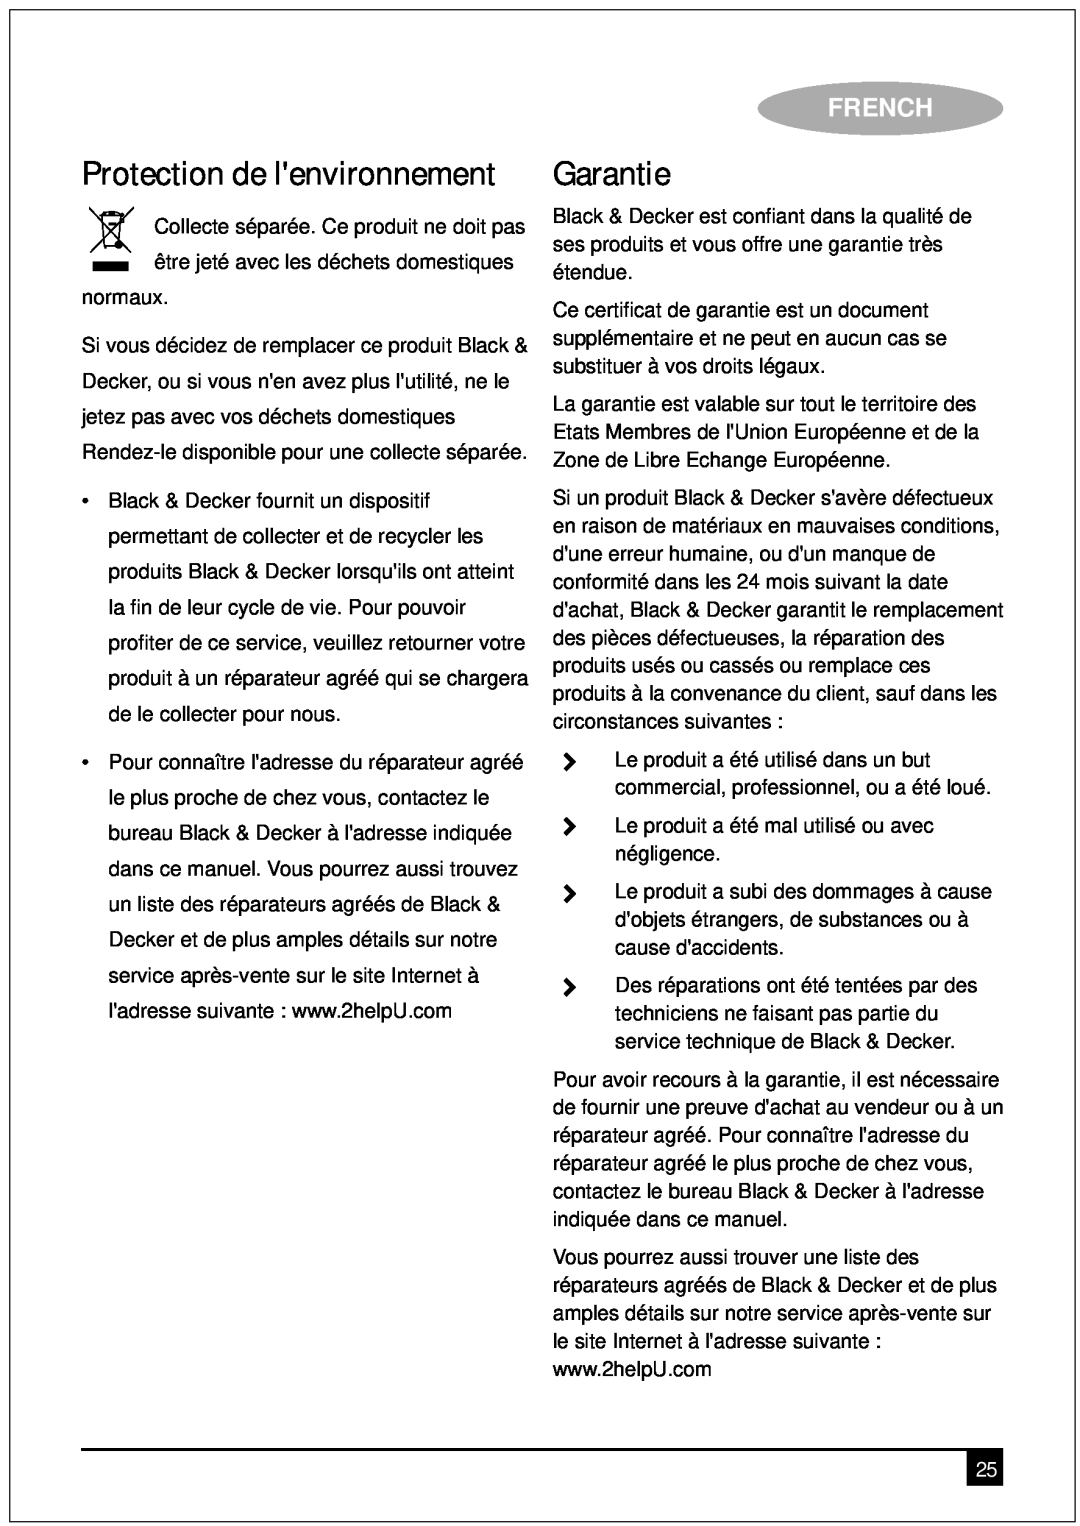 Black & Decker DCM90 manual Garantie, Protection de lenvironnement, French 